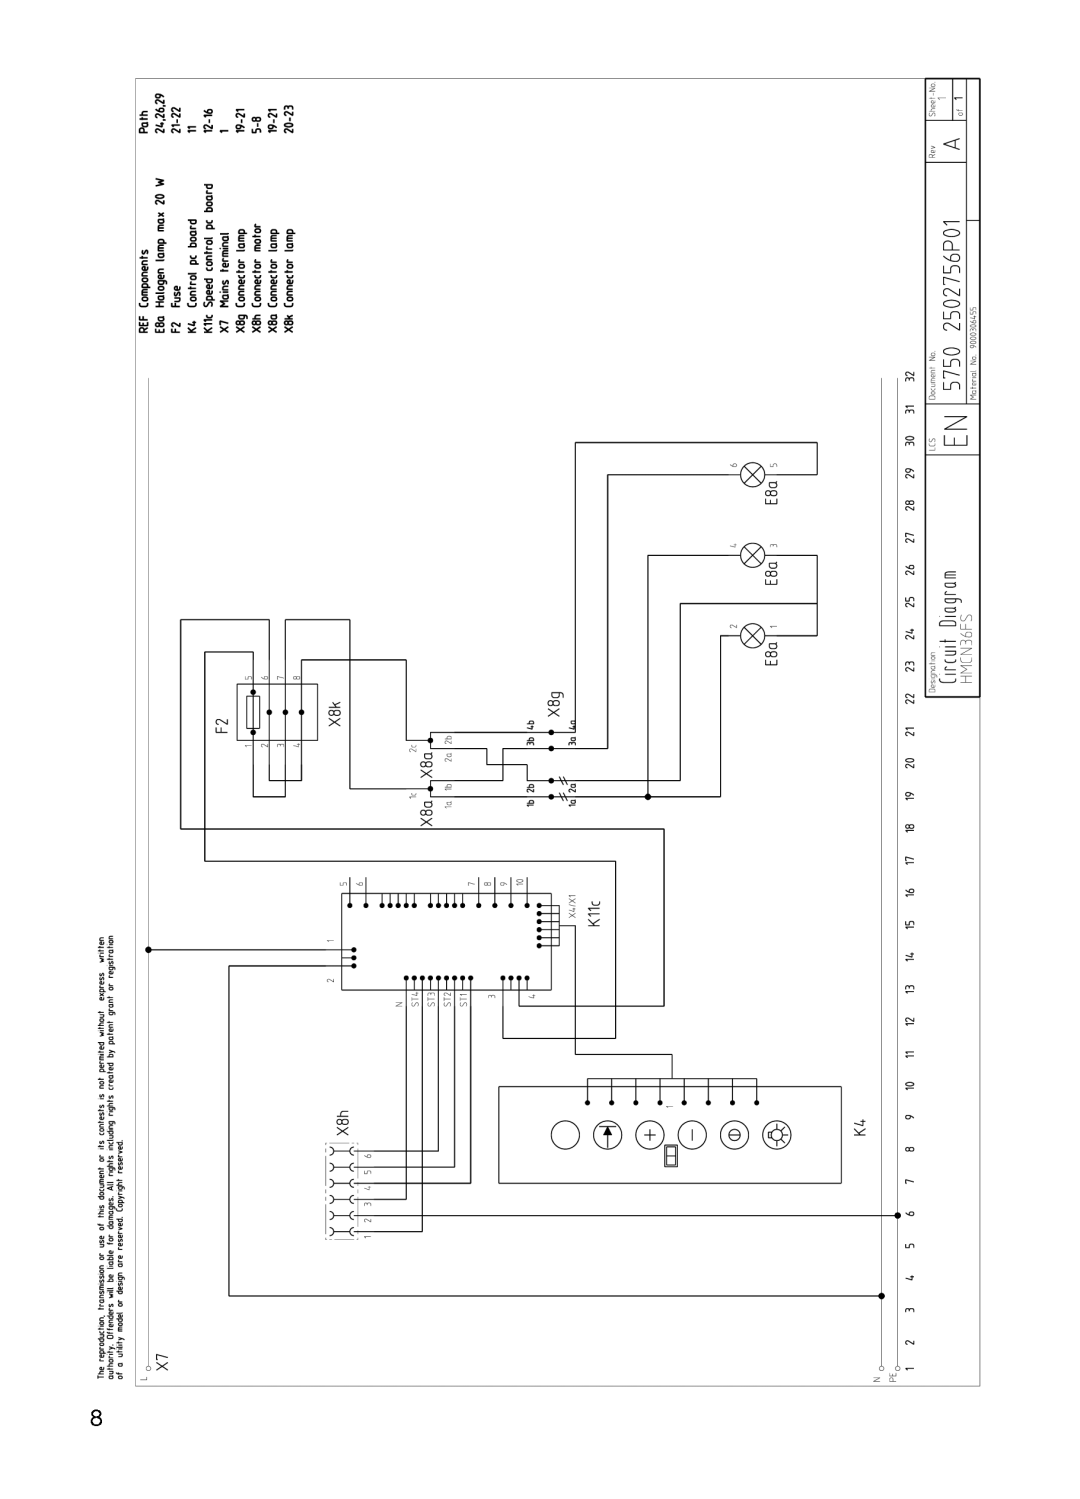 Thermador HMCN42FS, HMCN36FS installation manual 